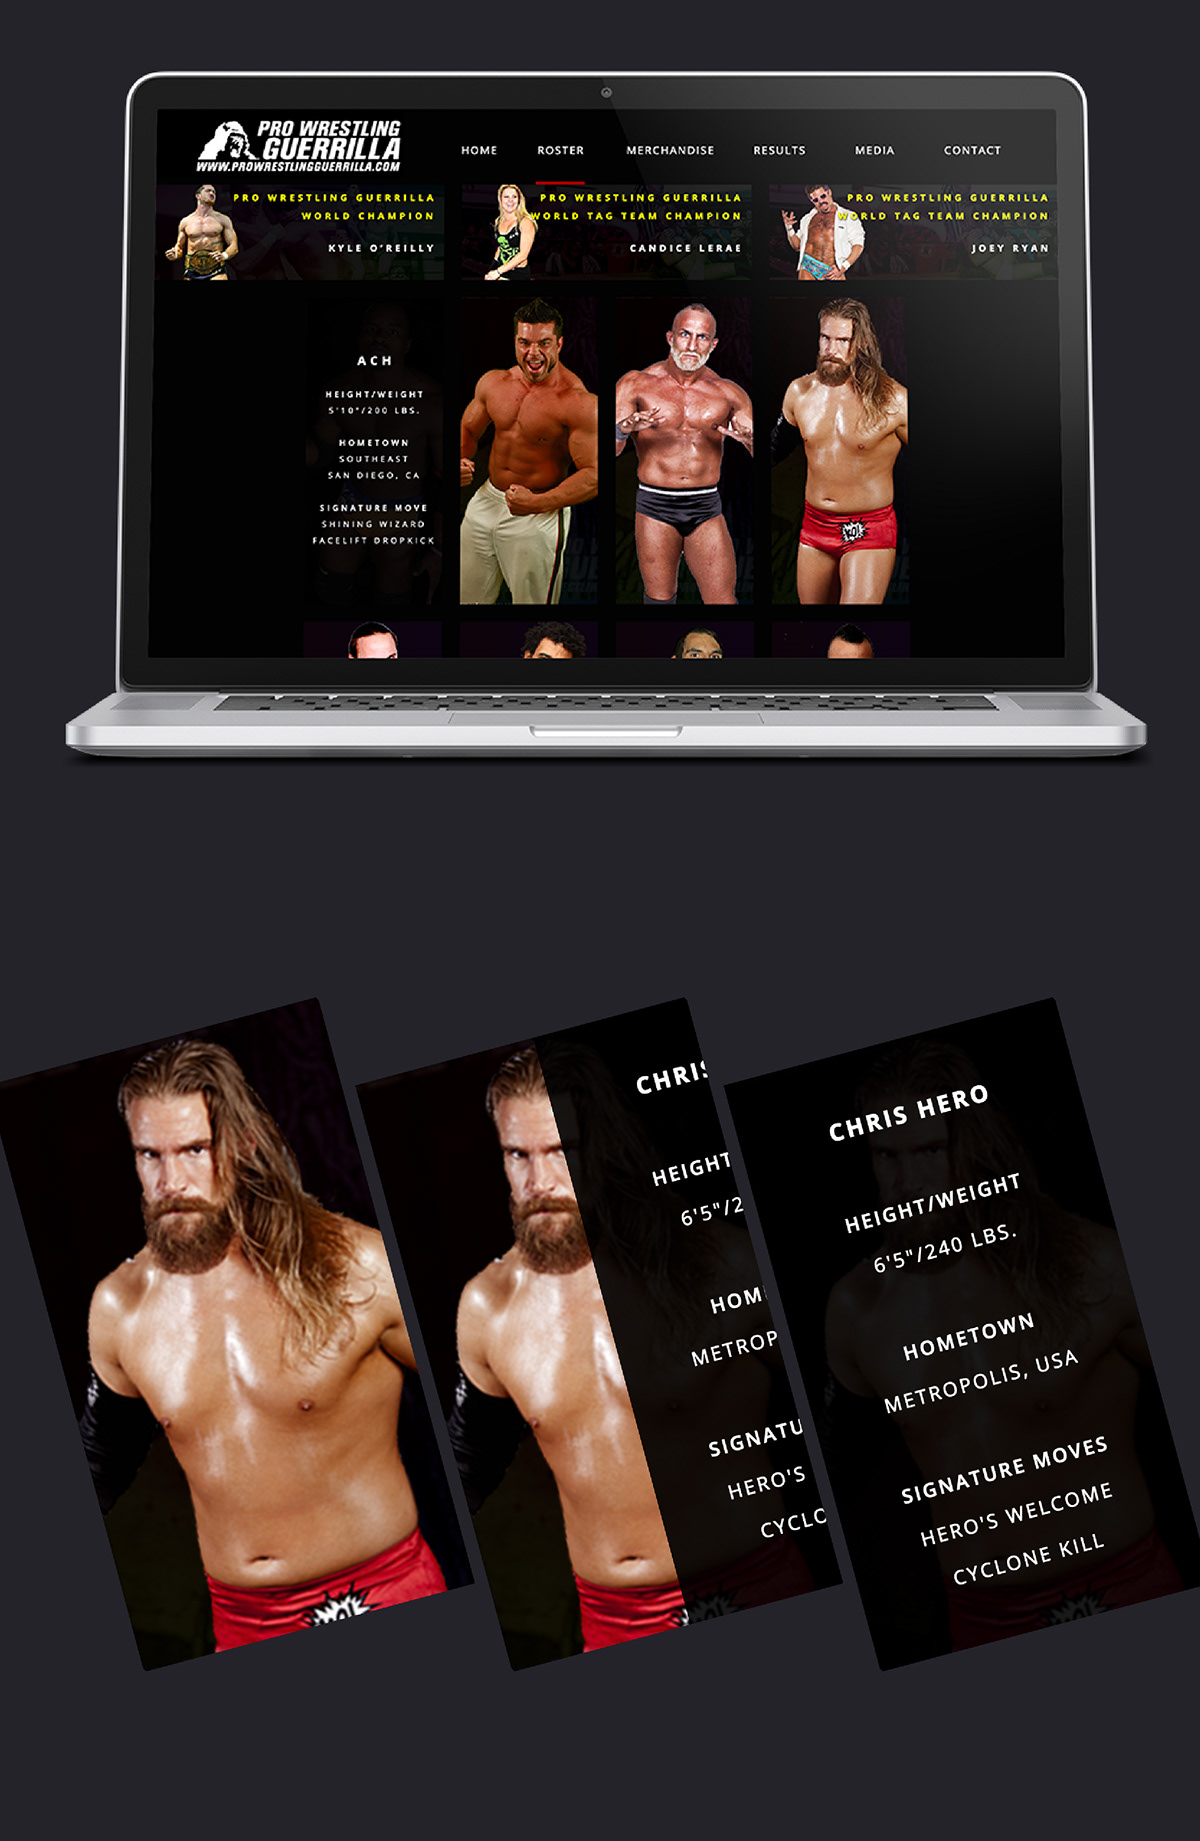 pwg pro wrestling guerrilla pro wrestling Wrestling redesign concept Website